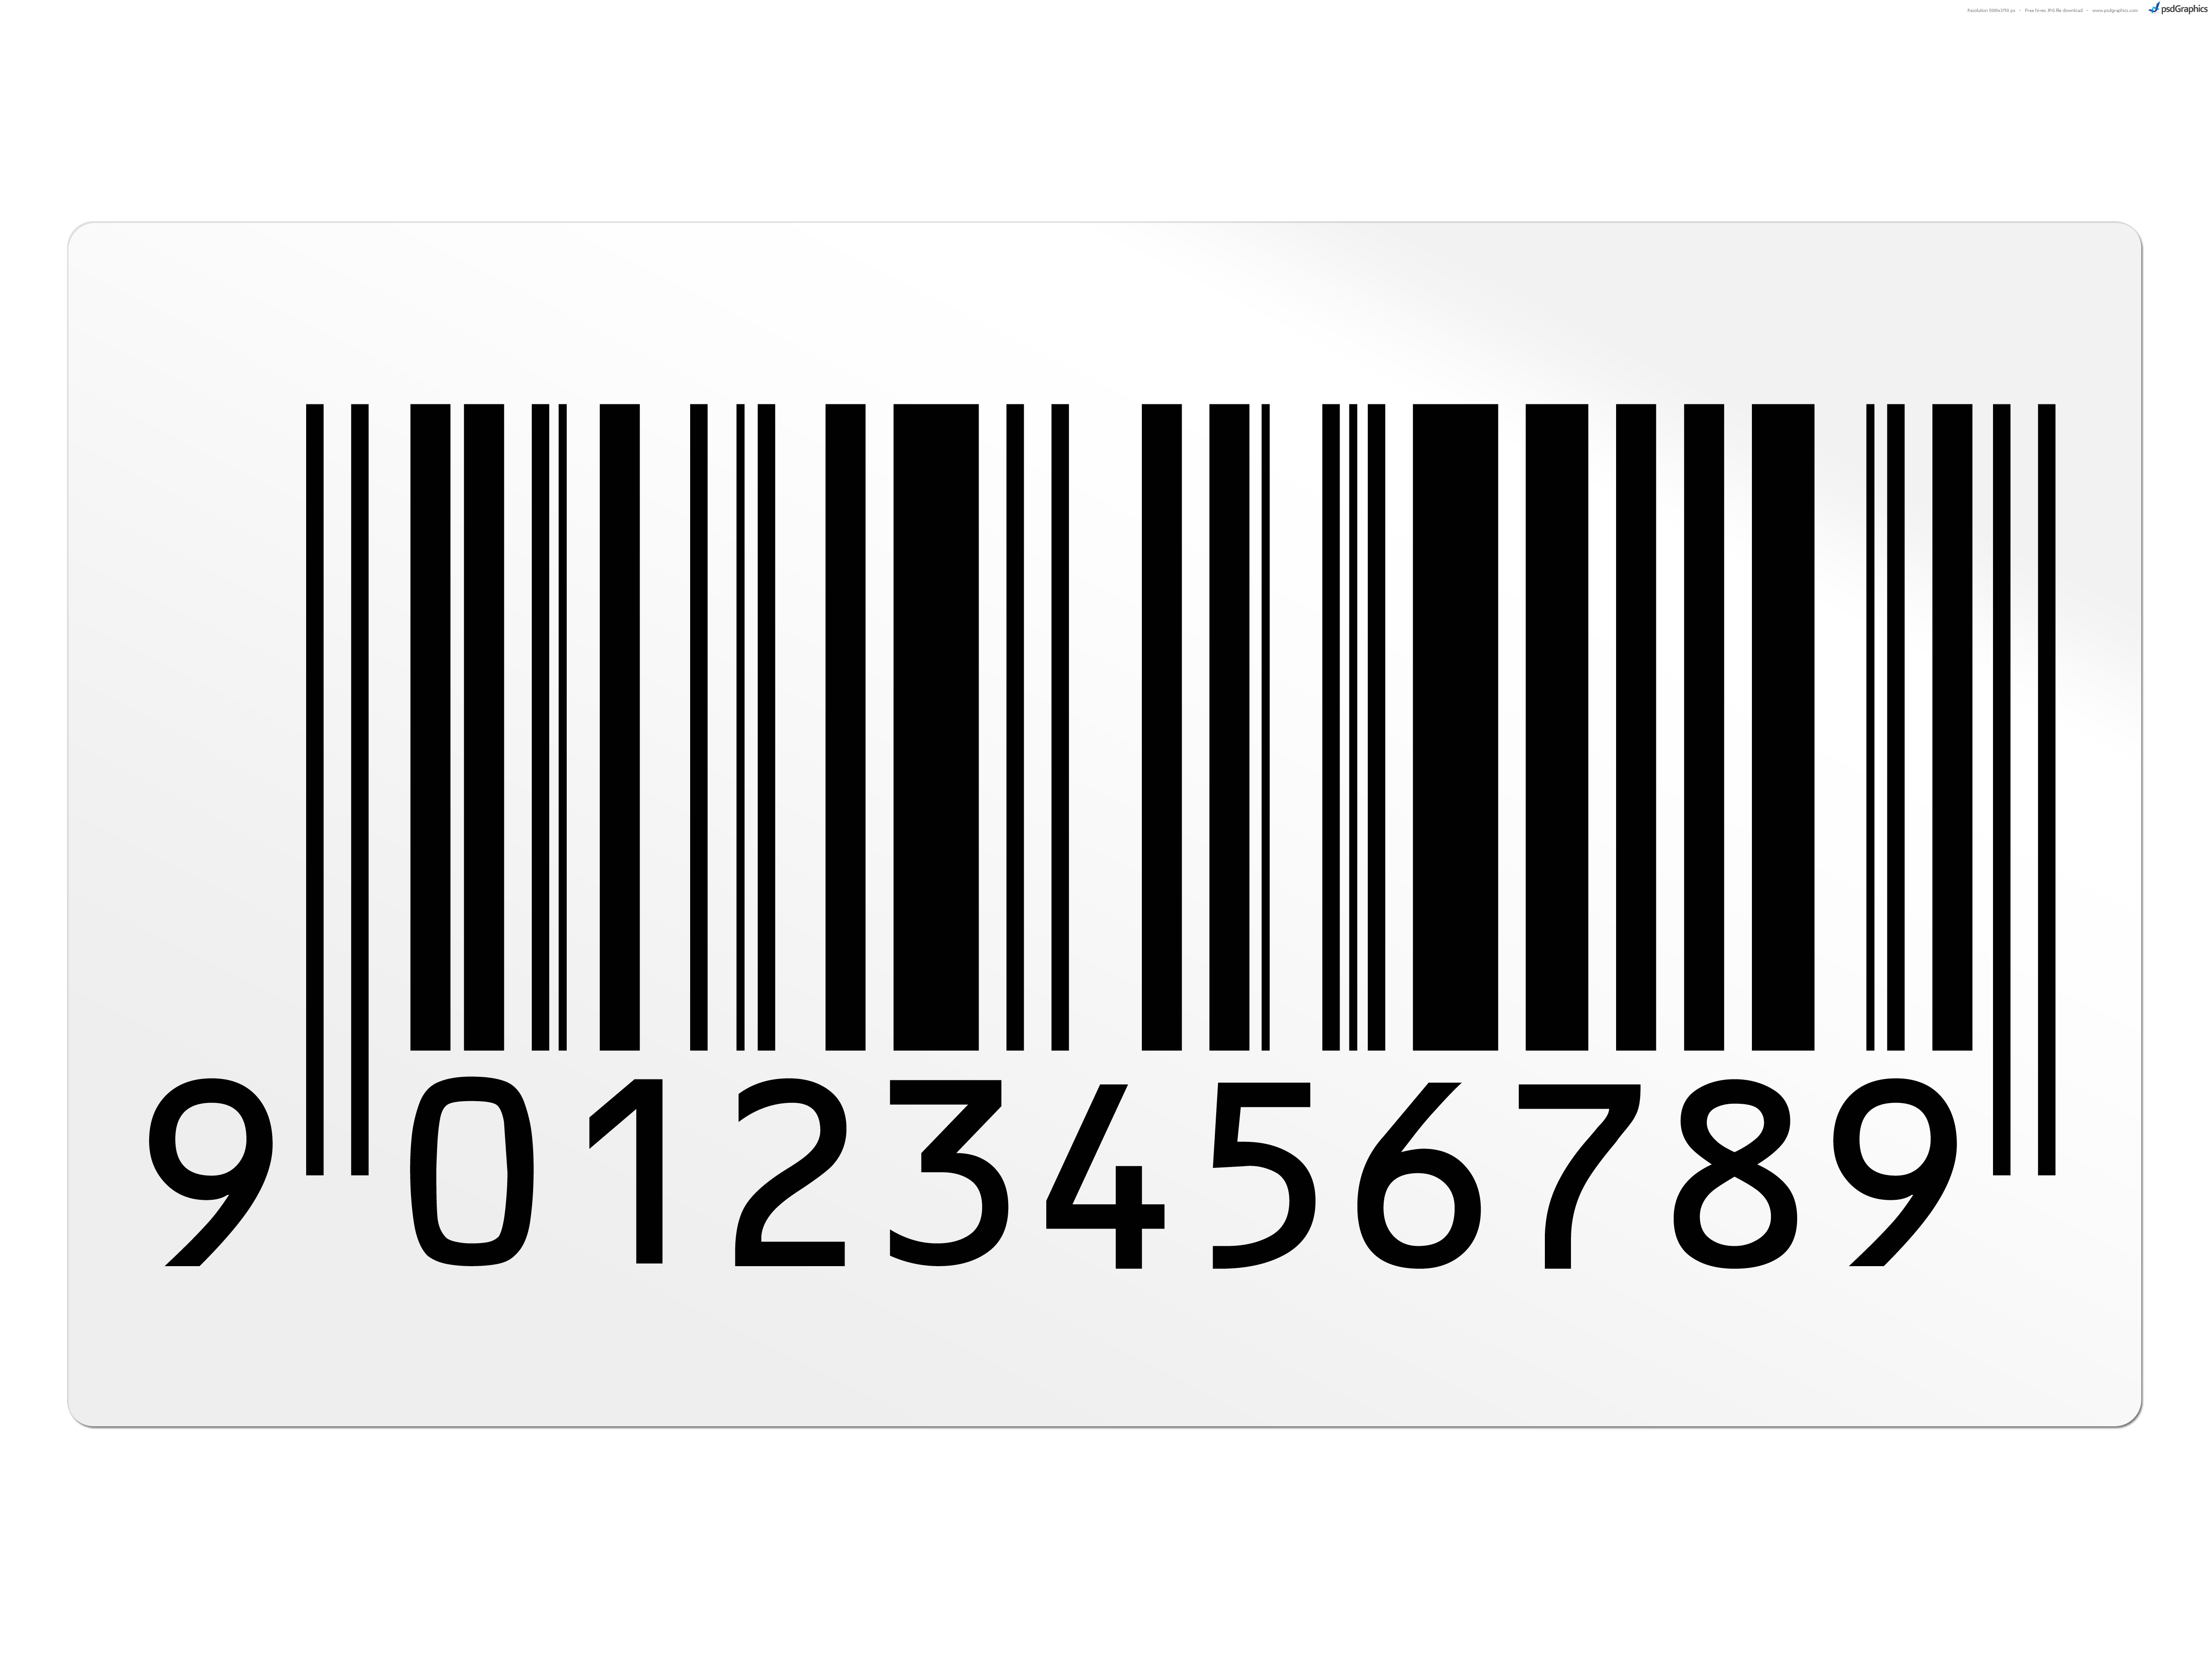 barcode reader clipart